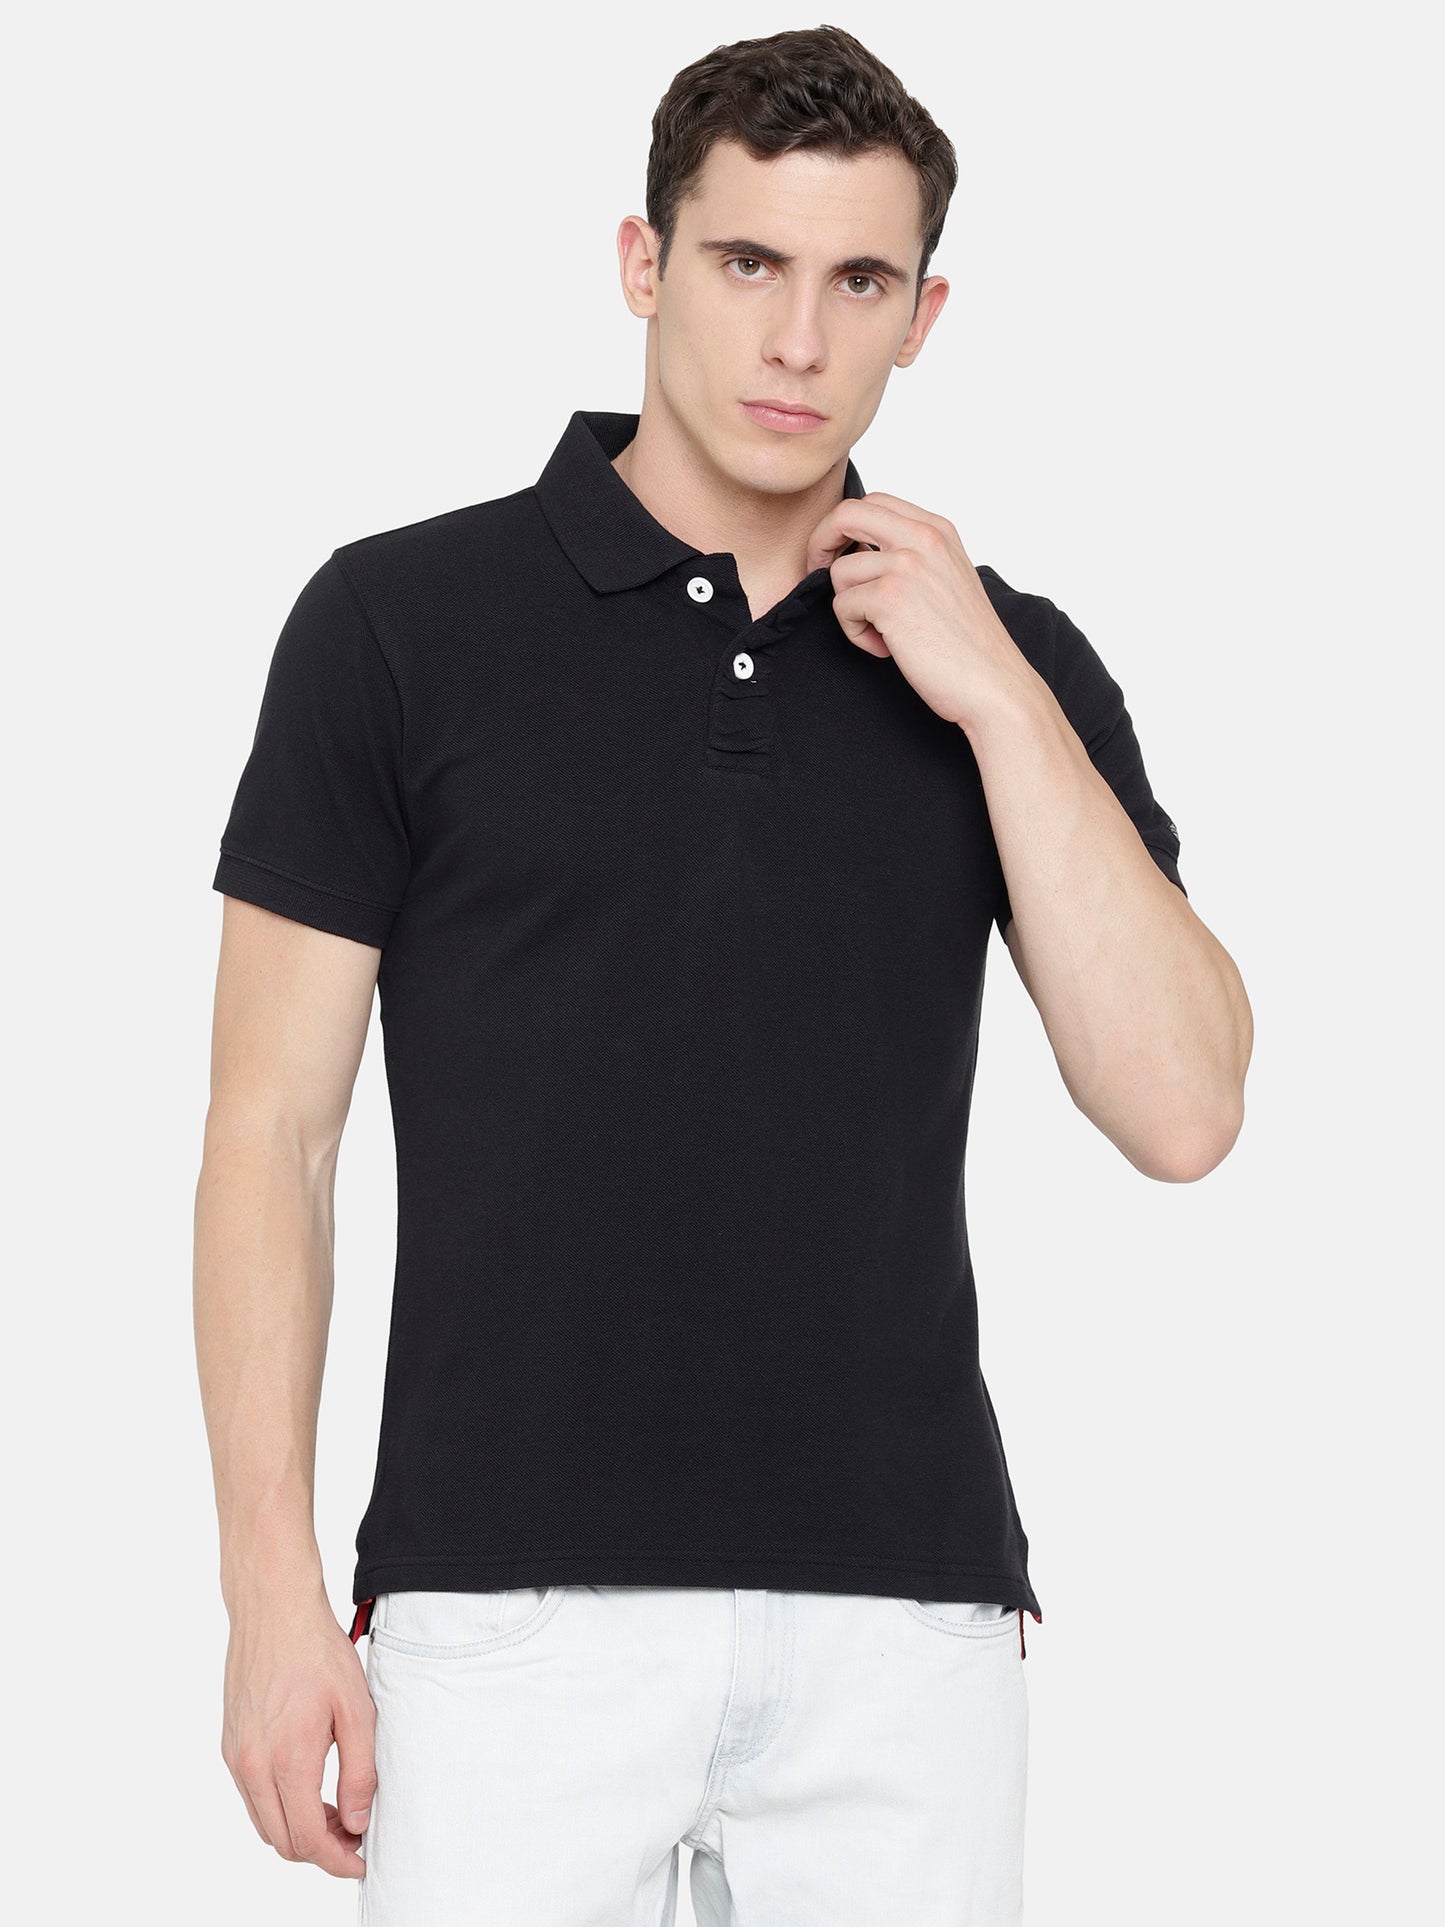 Black Polo T-Shirt pique